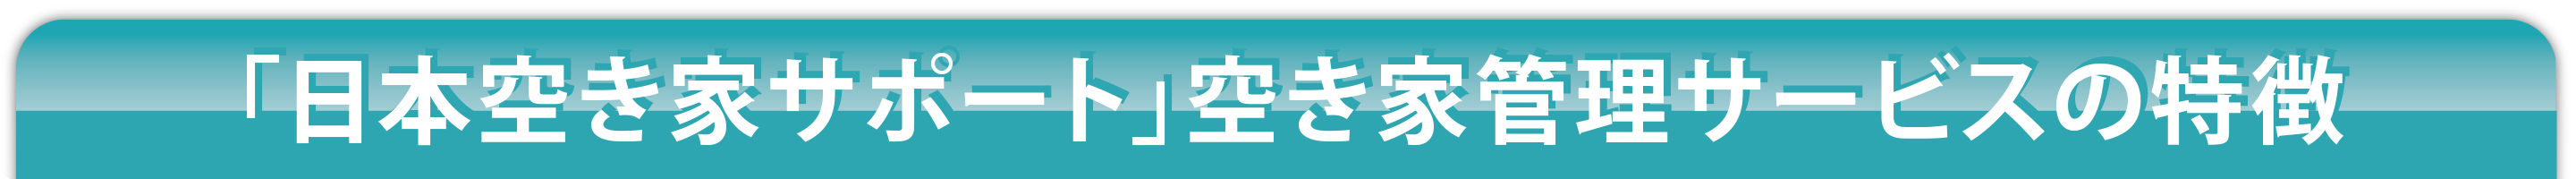 「日本空き家サポート」空き家管理サービスの特徴